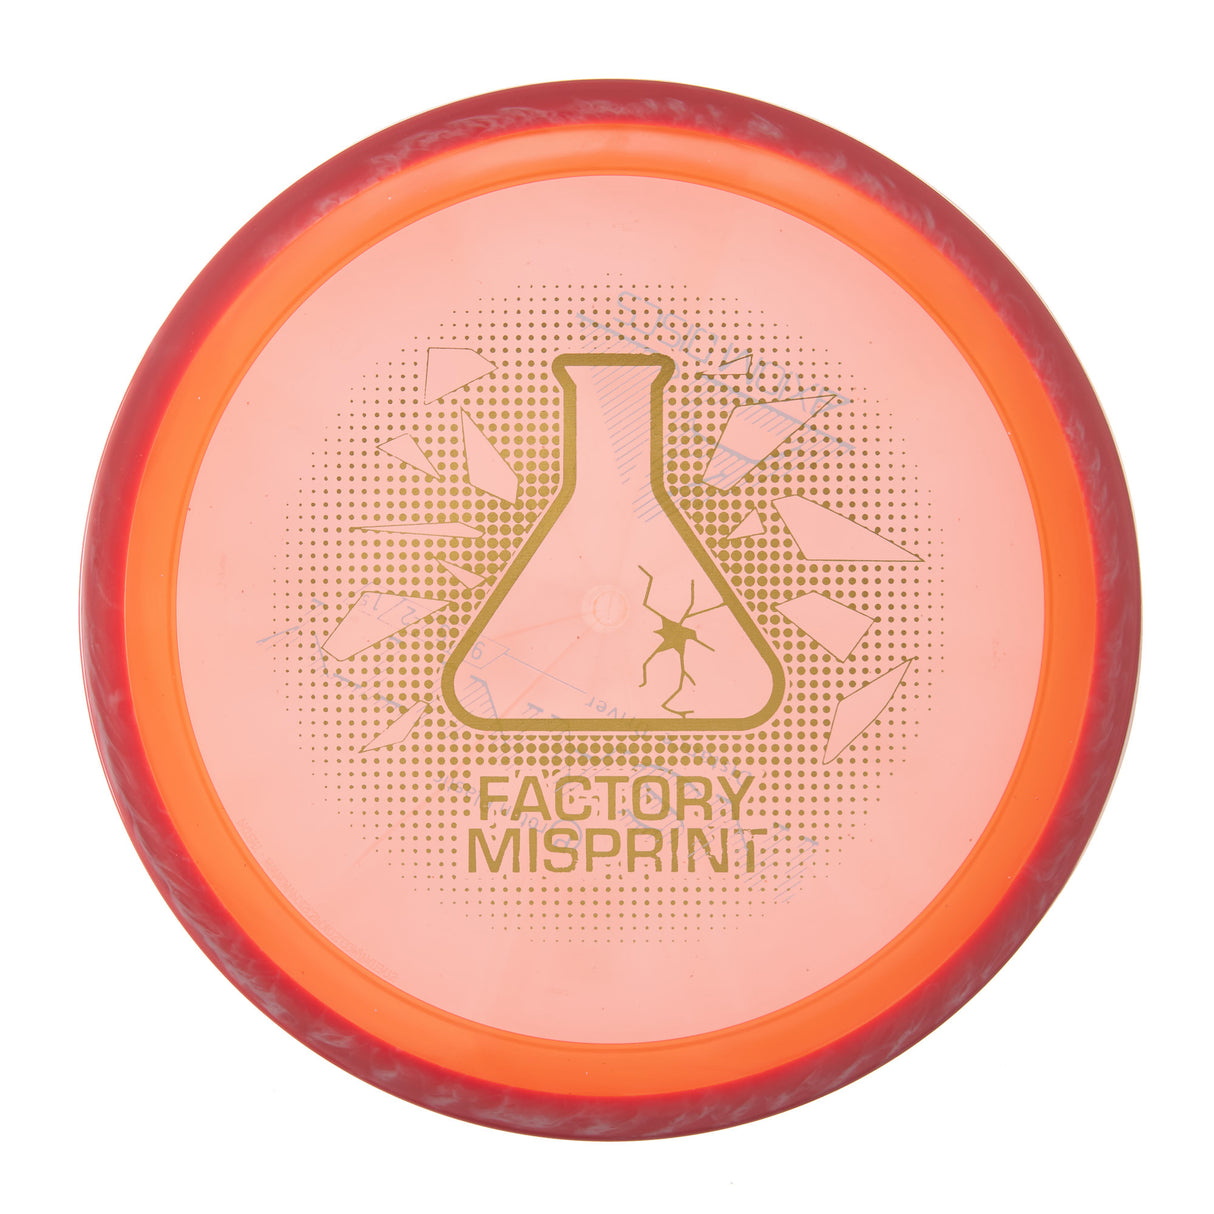 Axiom Insanity - Factory Misprint Proton 167g | Style 0003